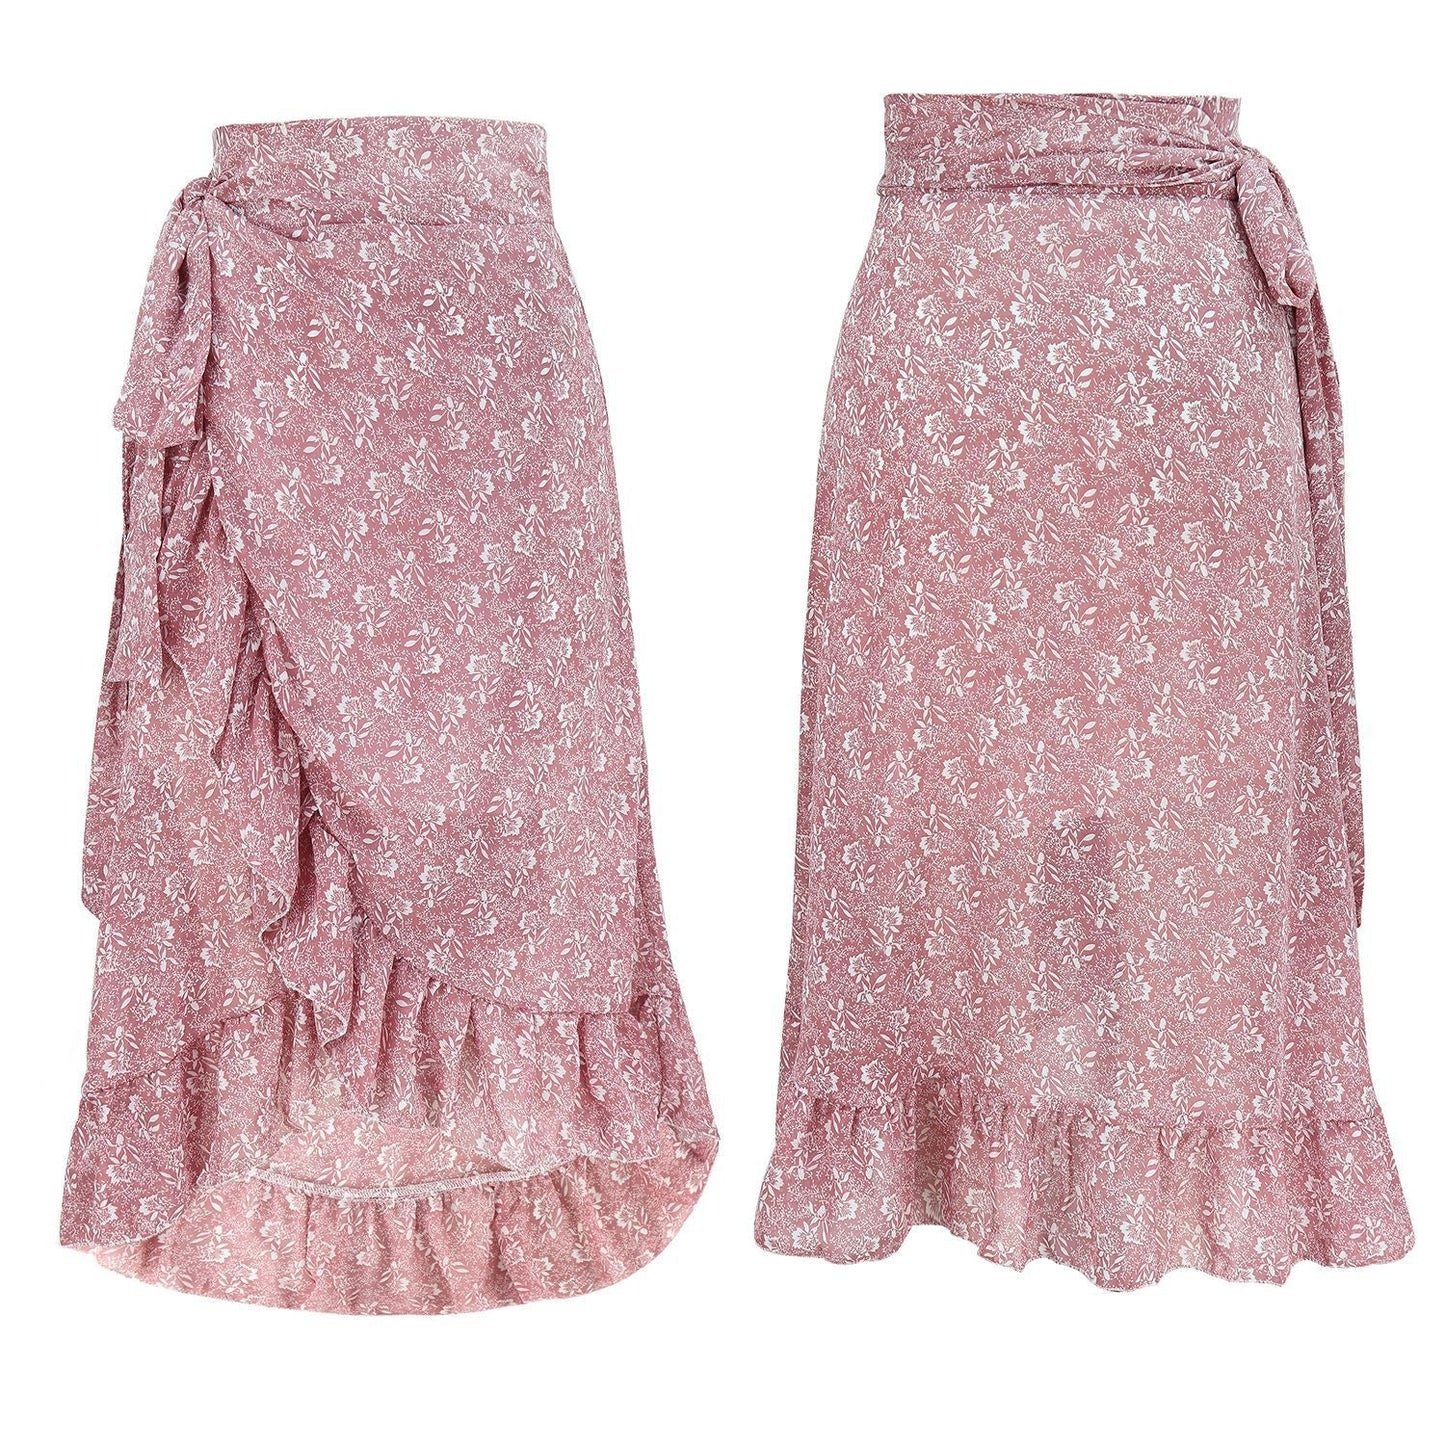 Sexy Summer Irregular Chiffon Skrts-Skirts-Pink-S-Free Shipping at meselling99